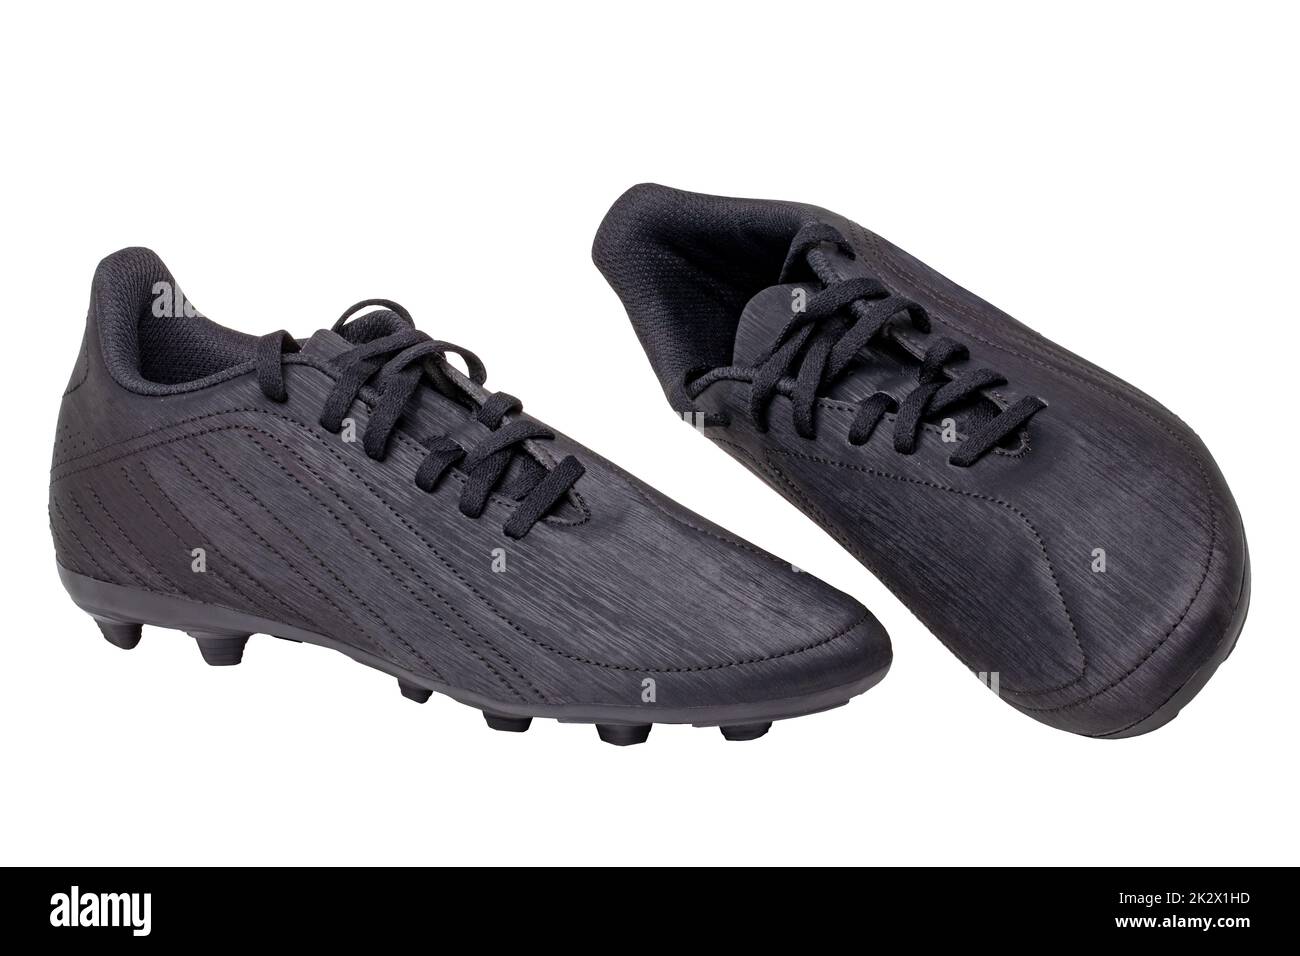 Primo piano di un paio di scarpe da calcio in pelle nera isolate su sfondo bianco. Scarpe da ginnastica professionali per ragazzi. Scarpe sportive. Foto Stock